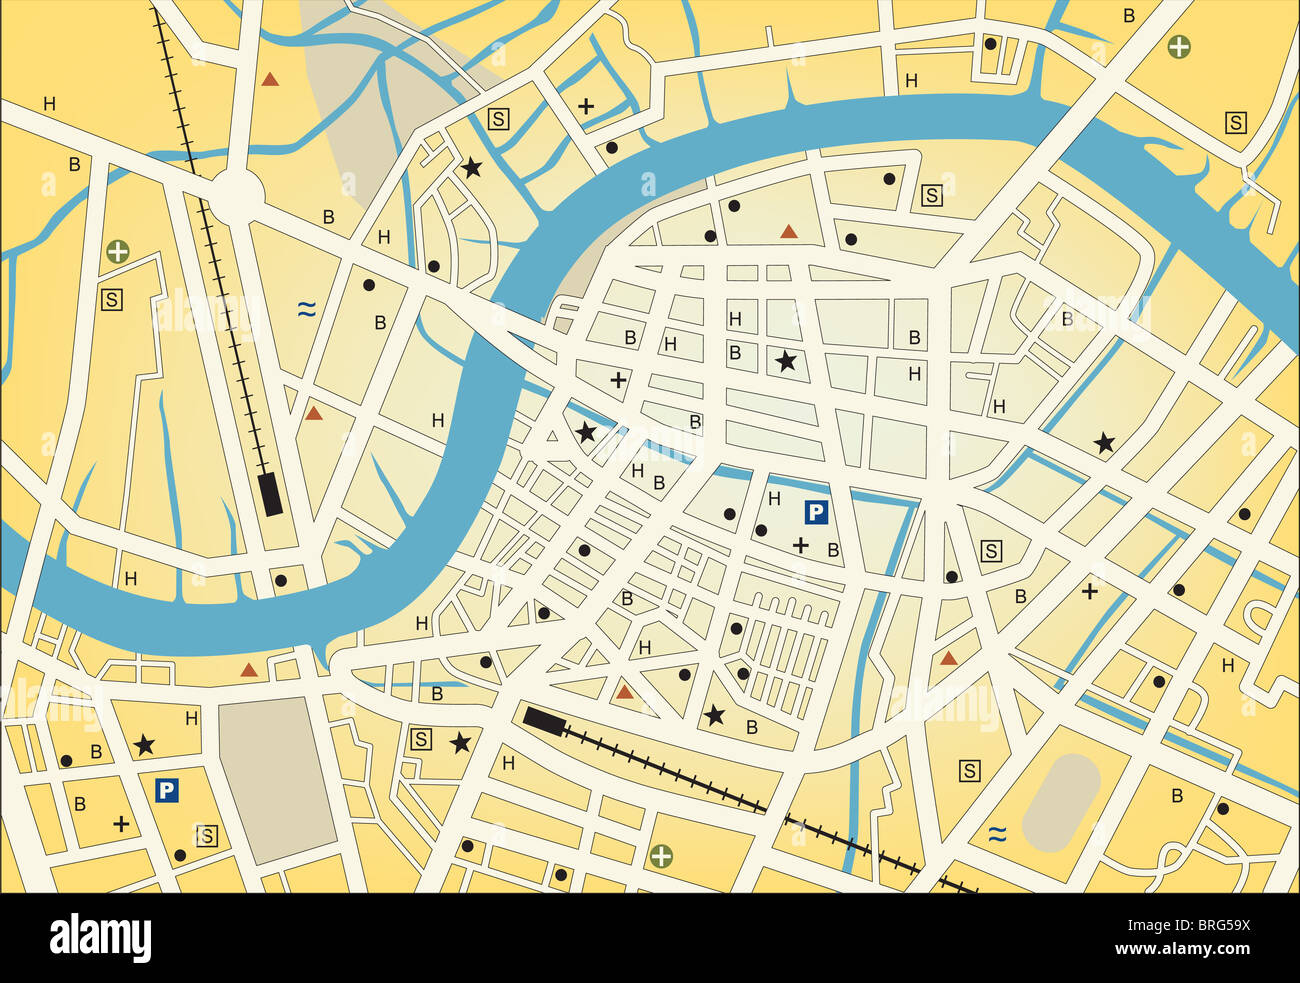 Illustrierte Stadtplan einer generischen Stadt ohne Namen Stockfoto